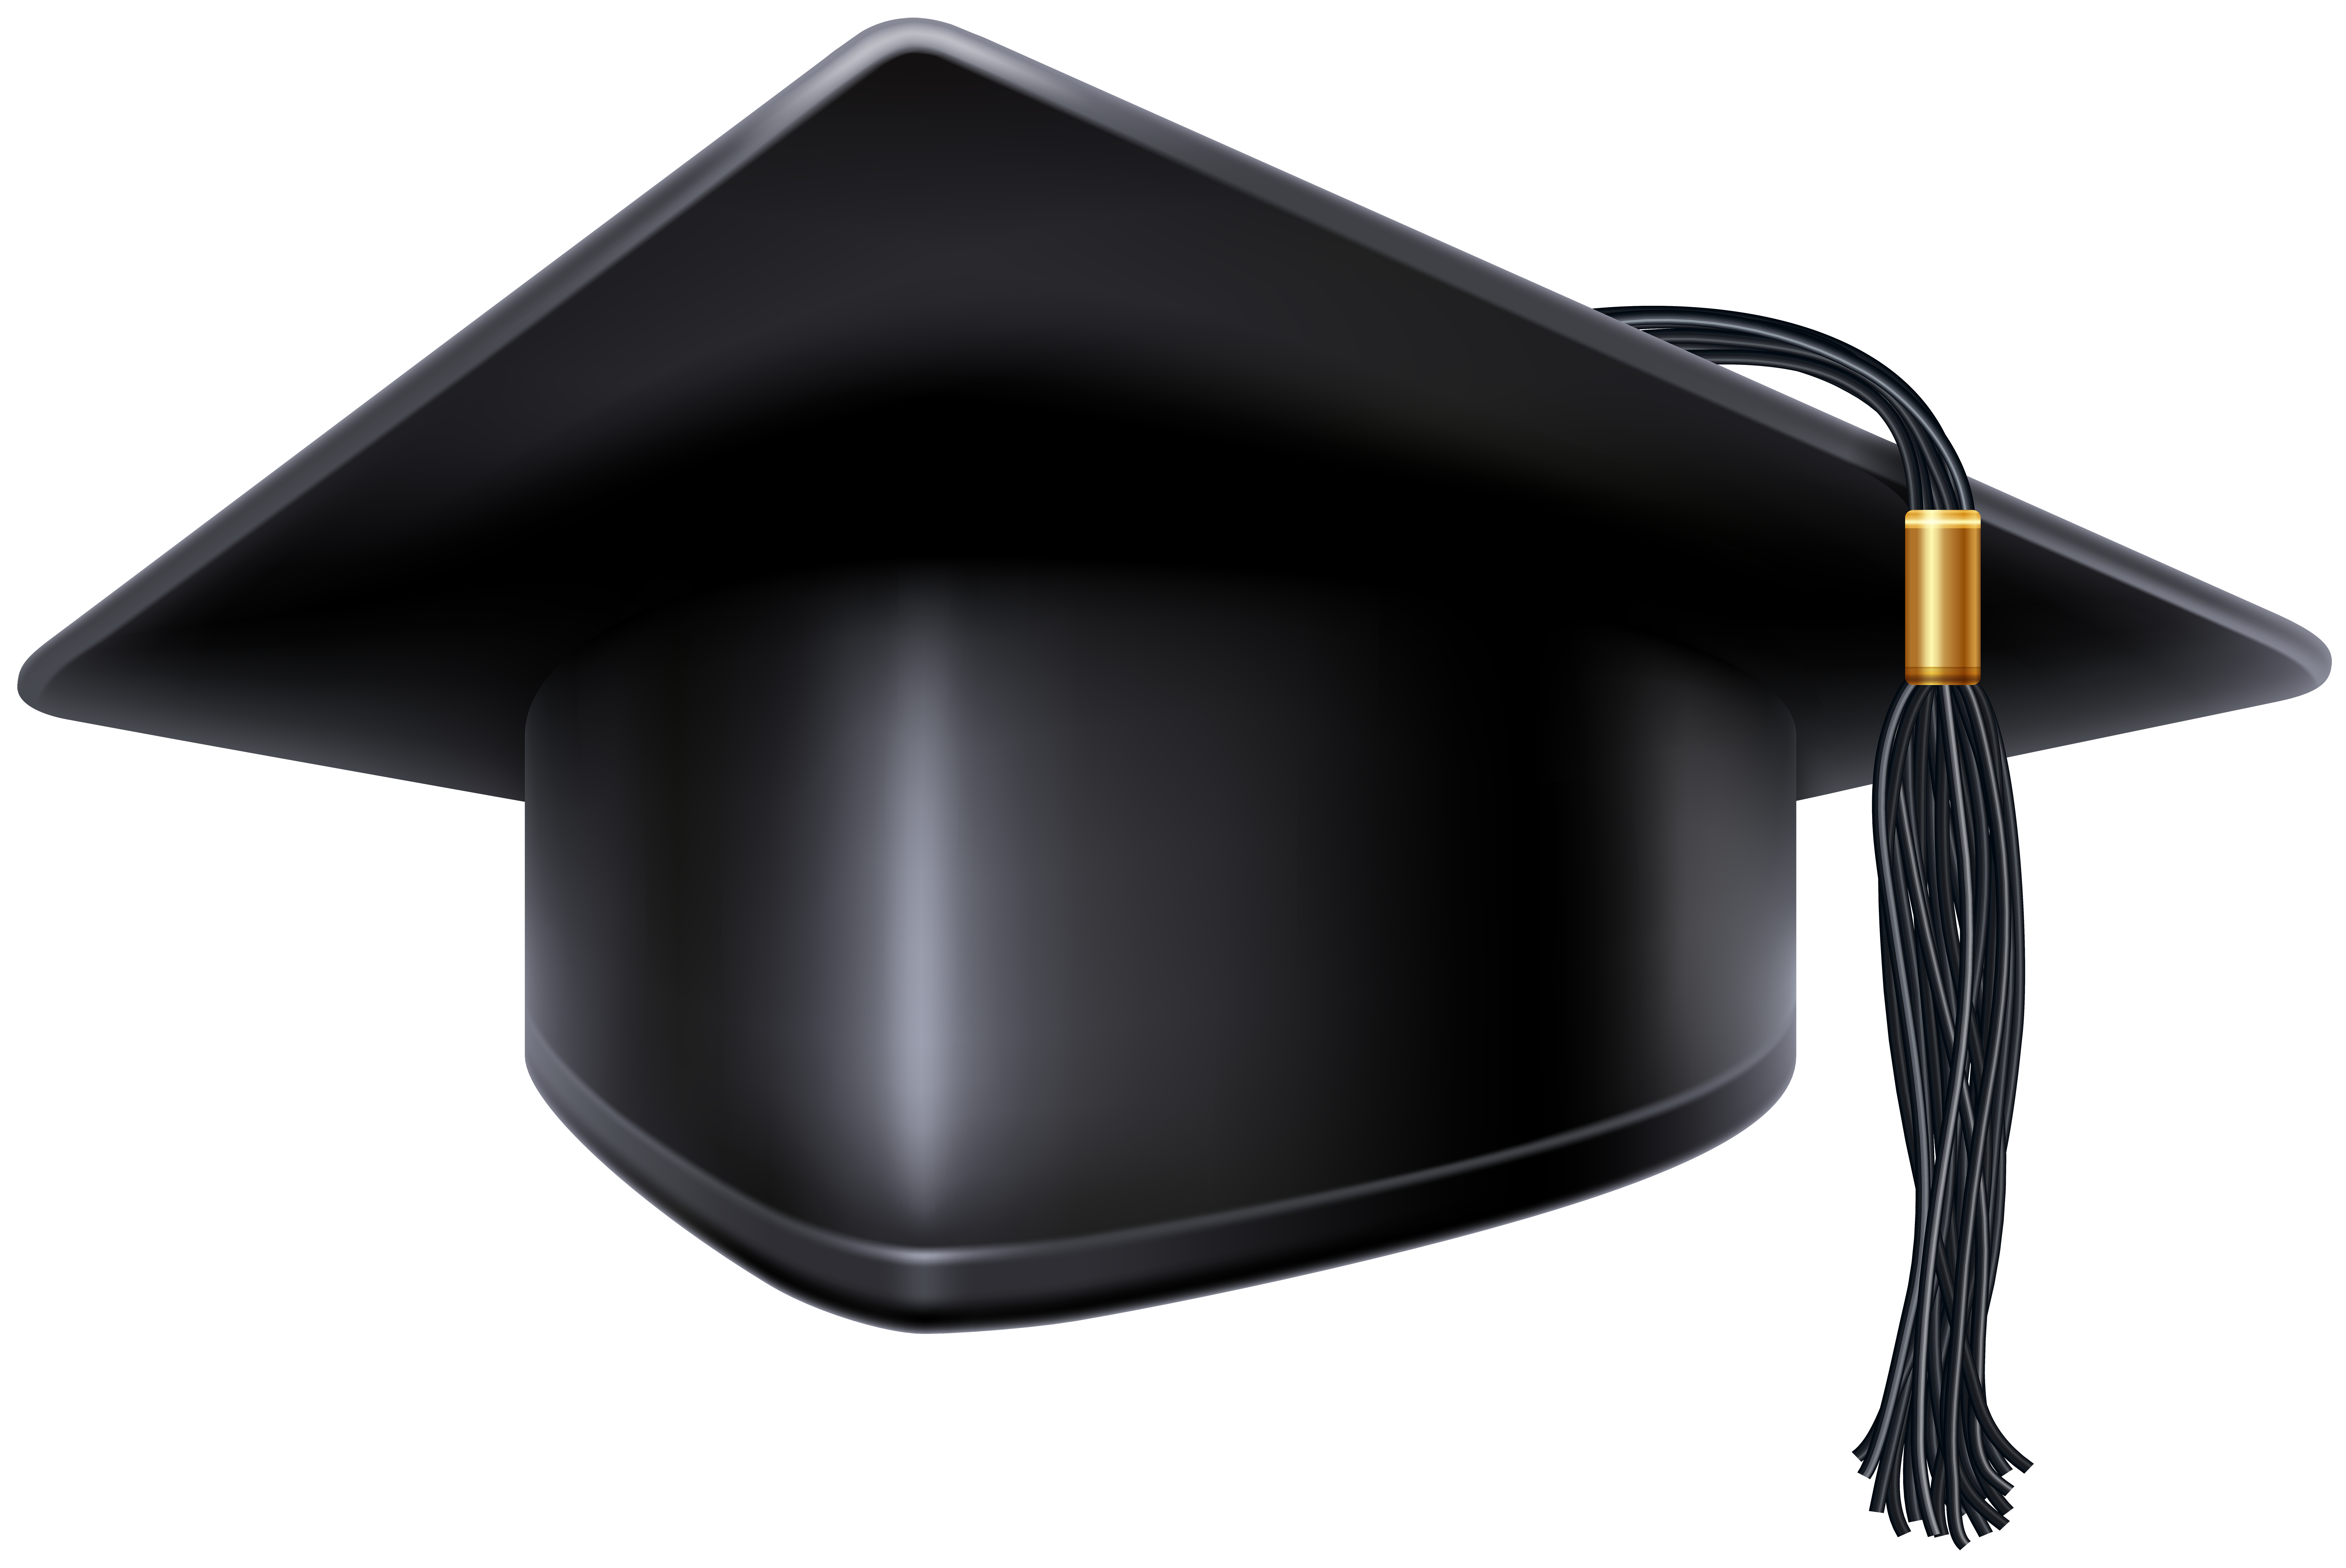 graduation hat clipart black - photo #38